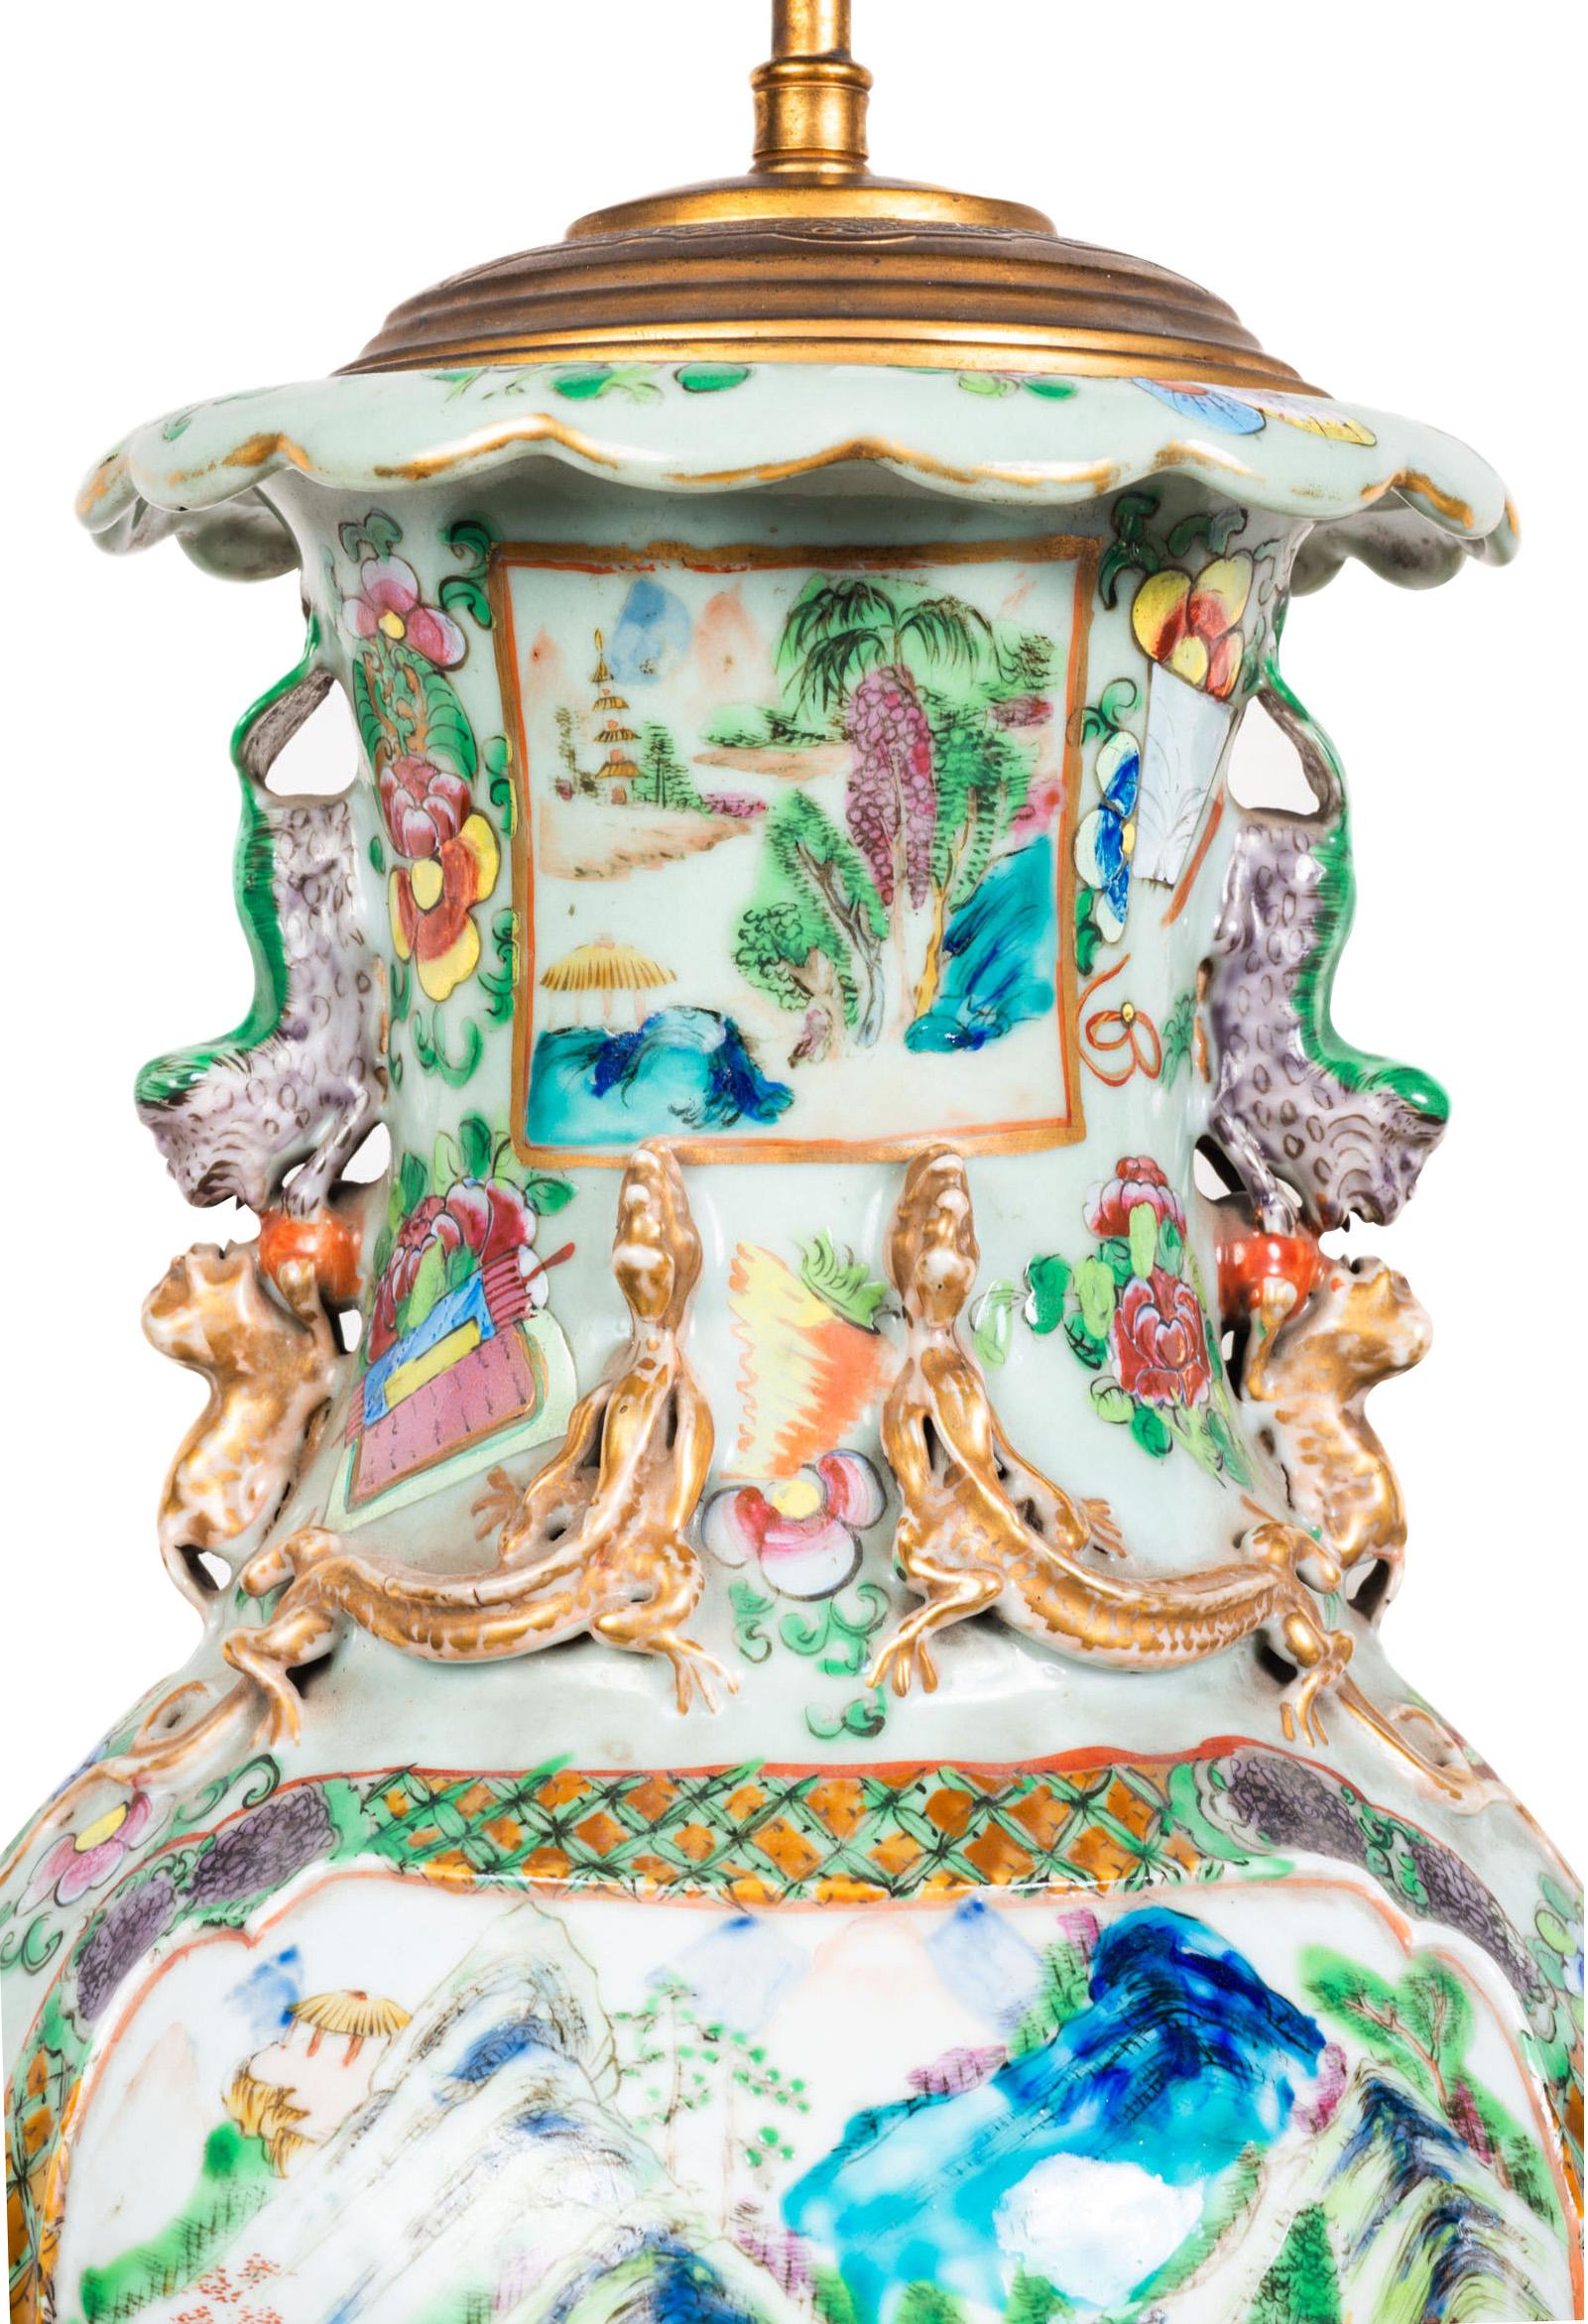 Eine wunderbare Qualität Paar Mitte des 19. Jahrhunderts chinesischen Kantonesisch / Rose Medaillon Vasen / Lampen, die jeweils mit kräftigen Farben, exotische Blumen, Schmetterlinge und Motive. Bemalte Tafeln mit Szenen aus dem Gebirge und von